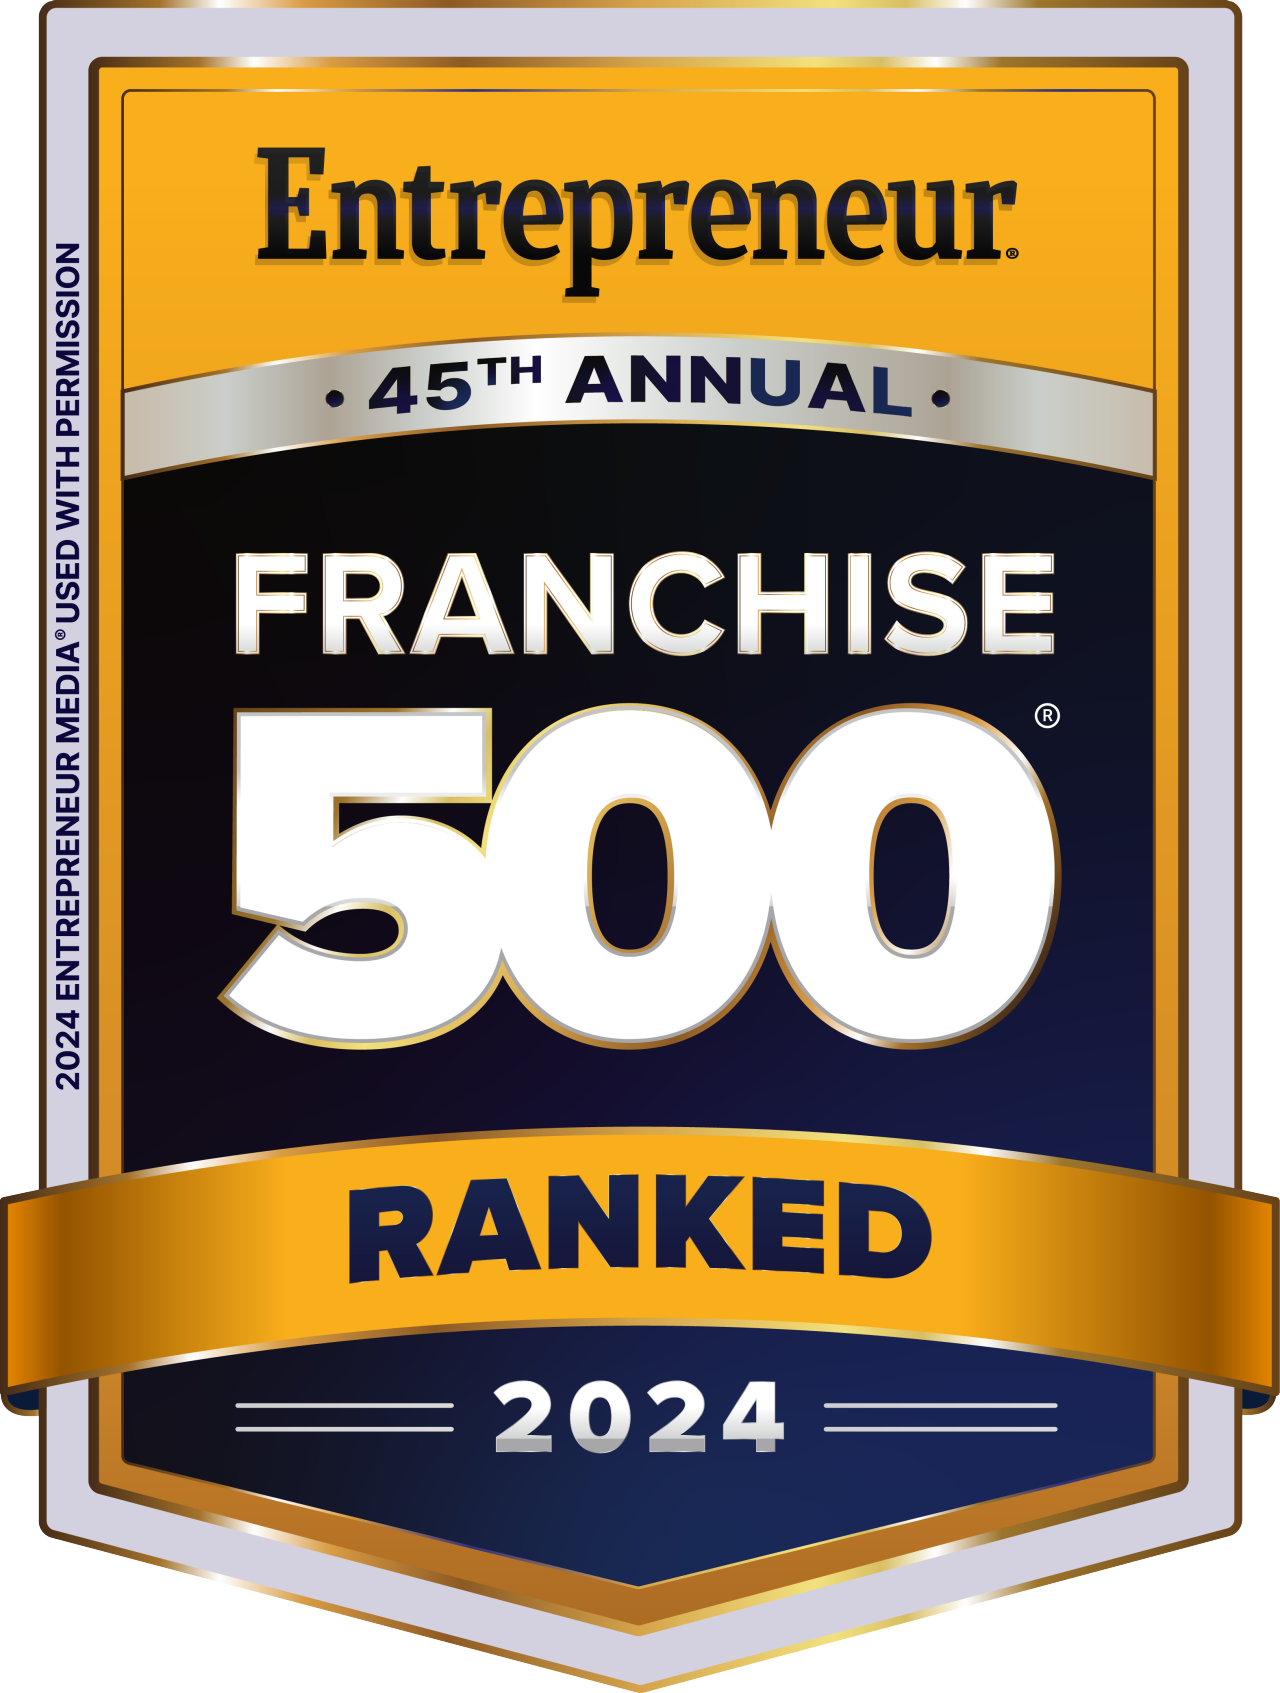 2023 Franchise 500 Award